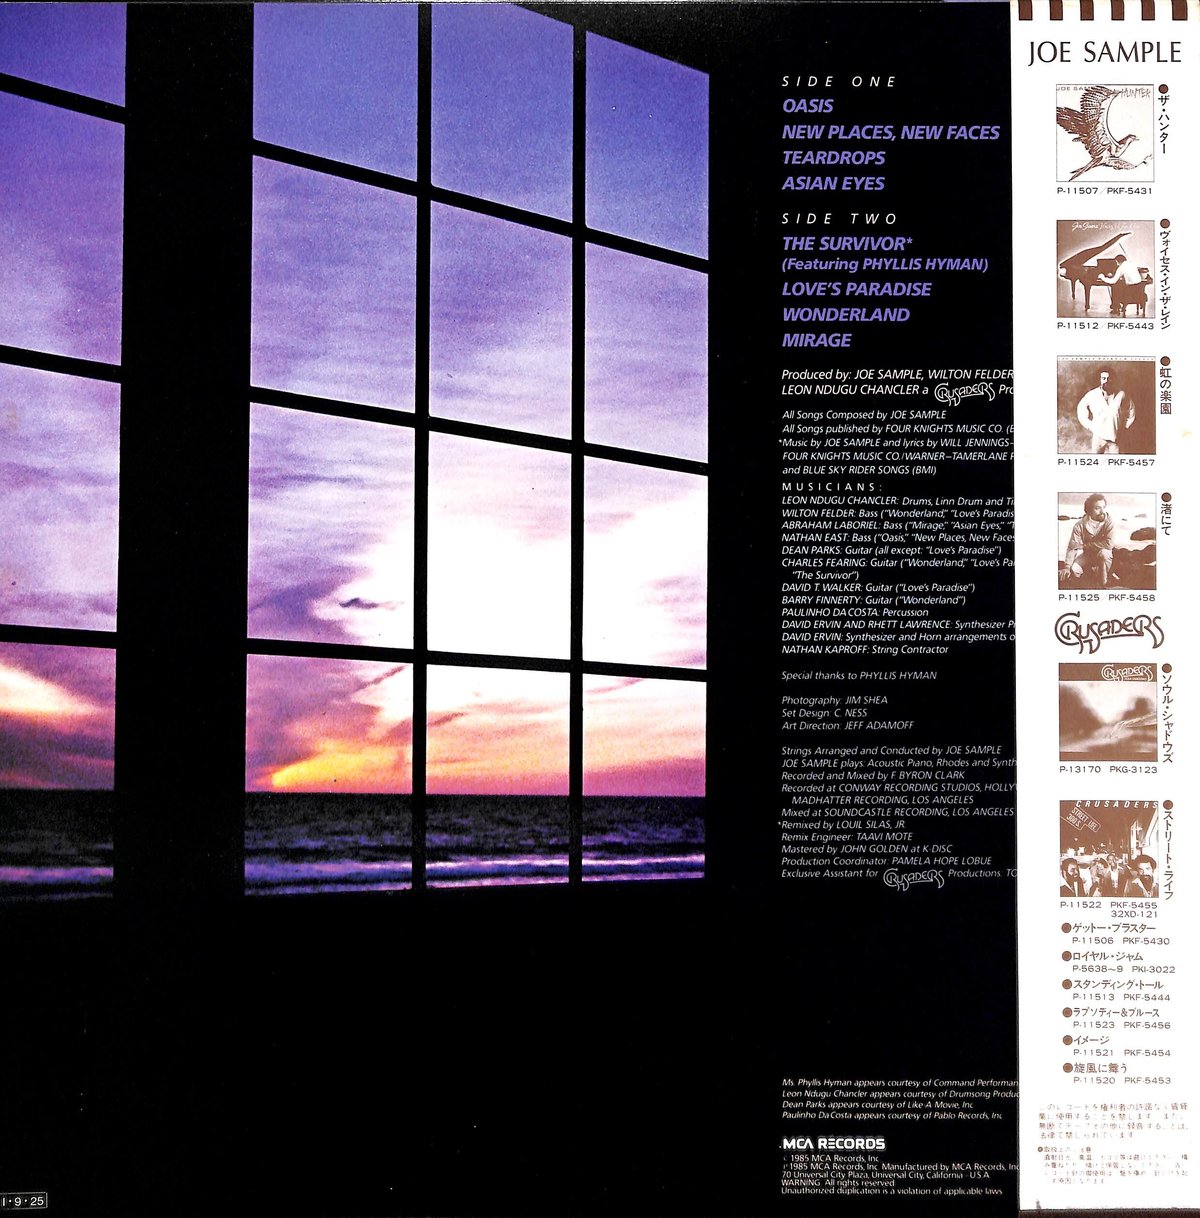 ジョー・サンプル / オアシス [※国内盤,品番:P-13163］(LPレコード 